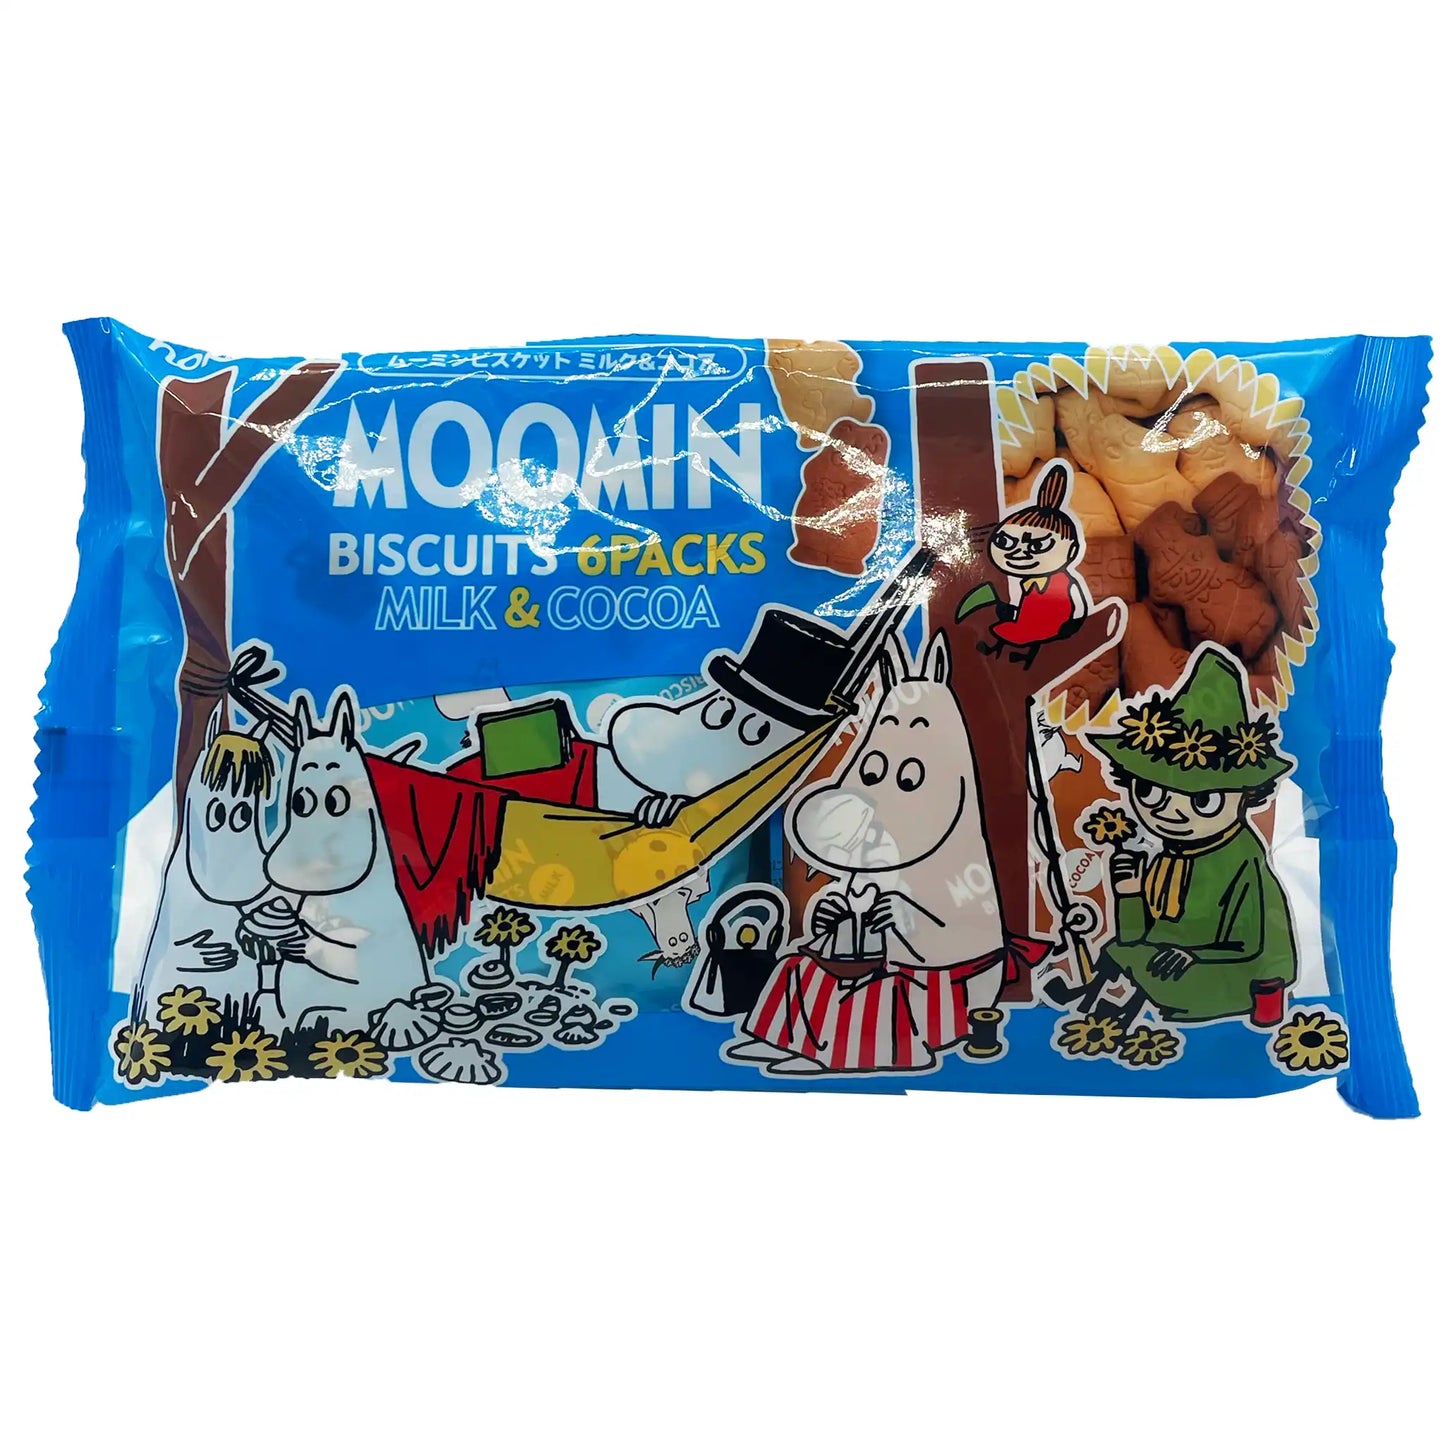 Hokka Moomin Biscuits 6 Pack 4.23 oz